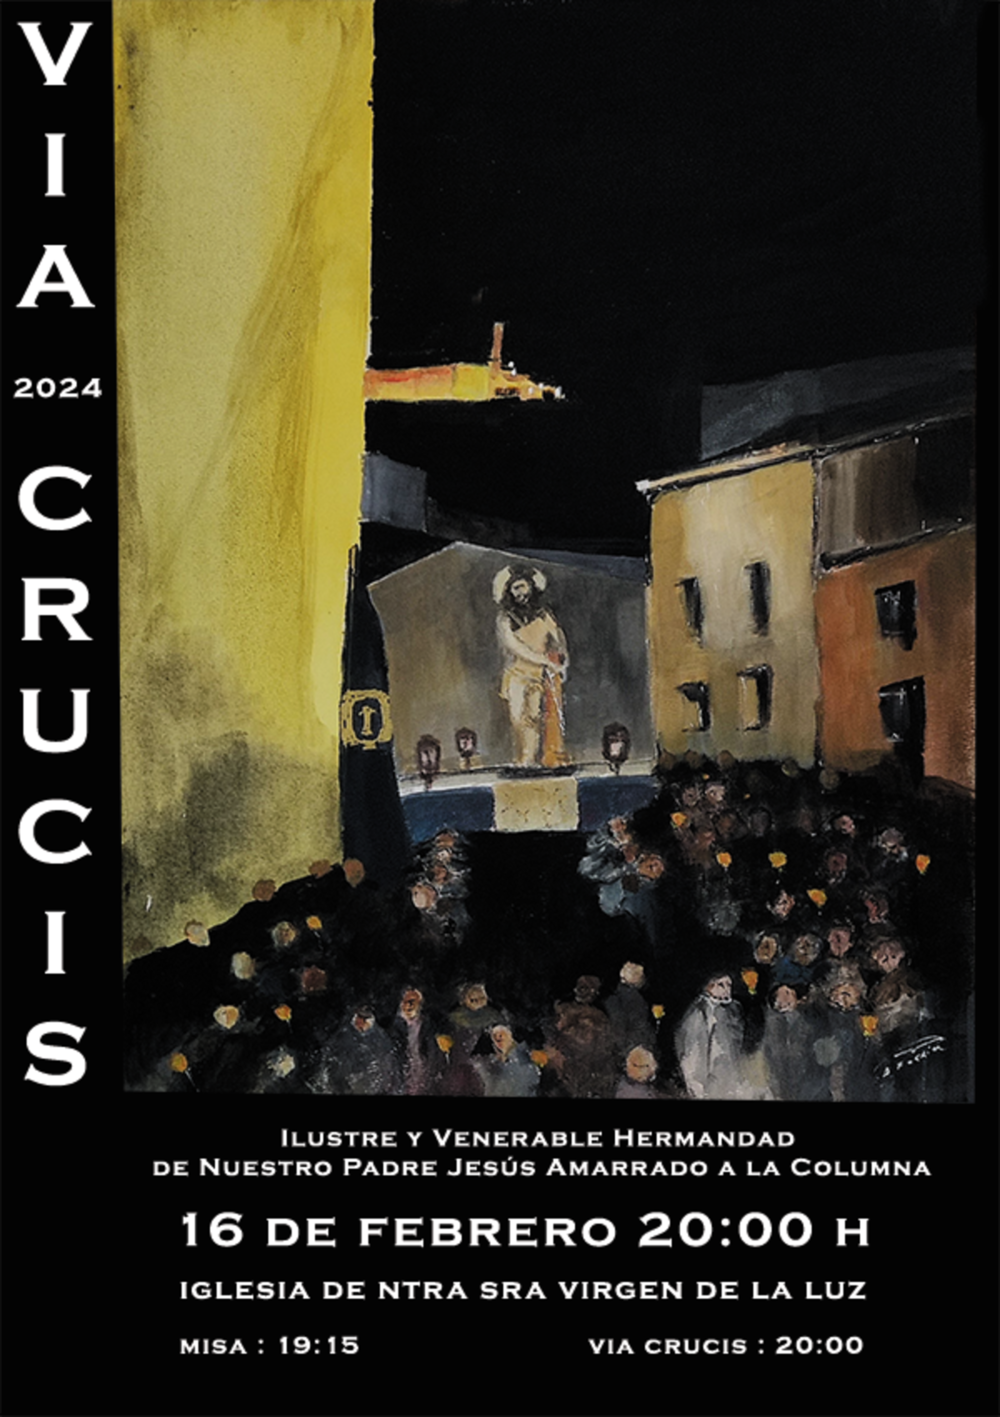 Diego Forriol diseña el cartel del Vía Crucis del Amarrado